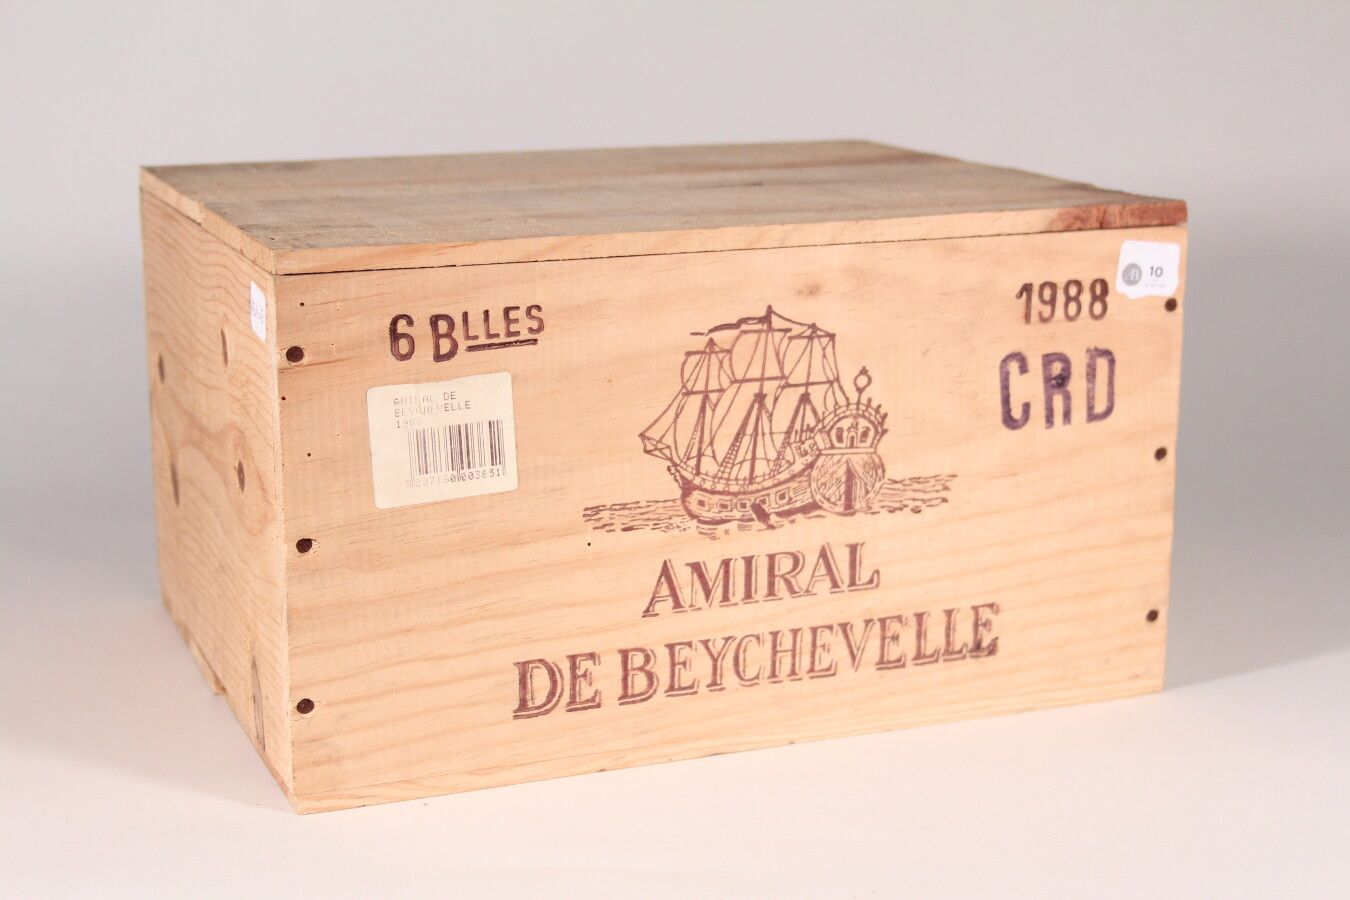 Null 1988 - Amiral de Beychevelle

Saint-Julien Rosso - 6 blles CBO